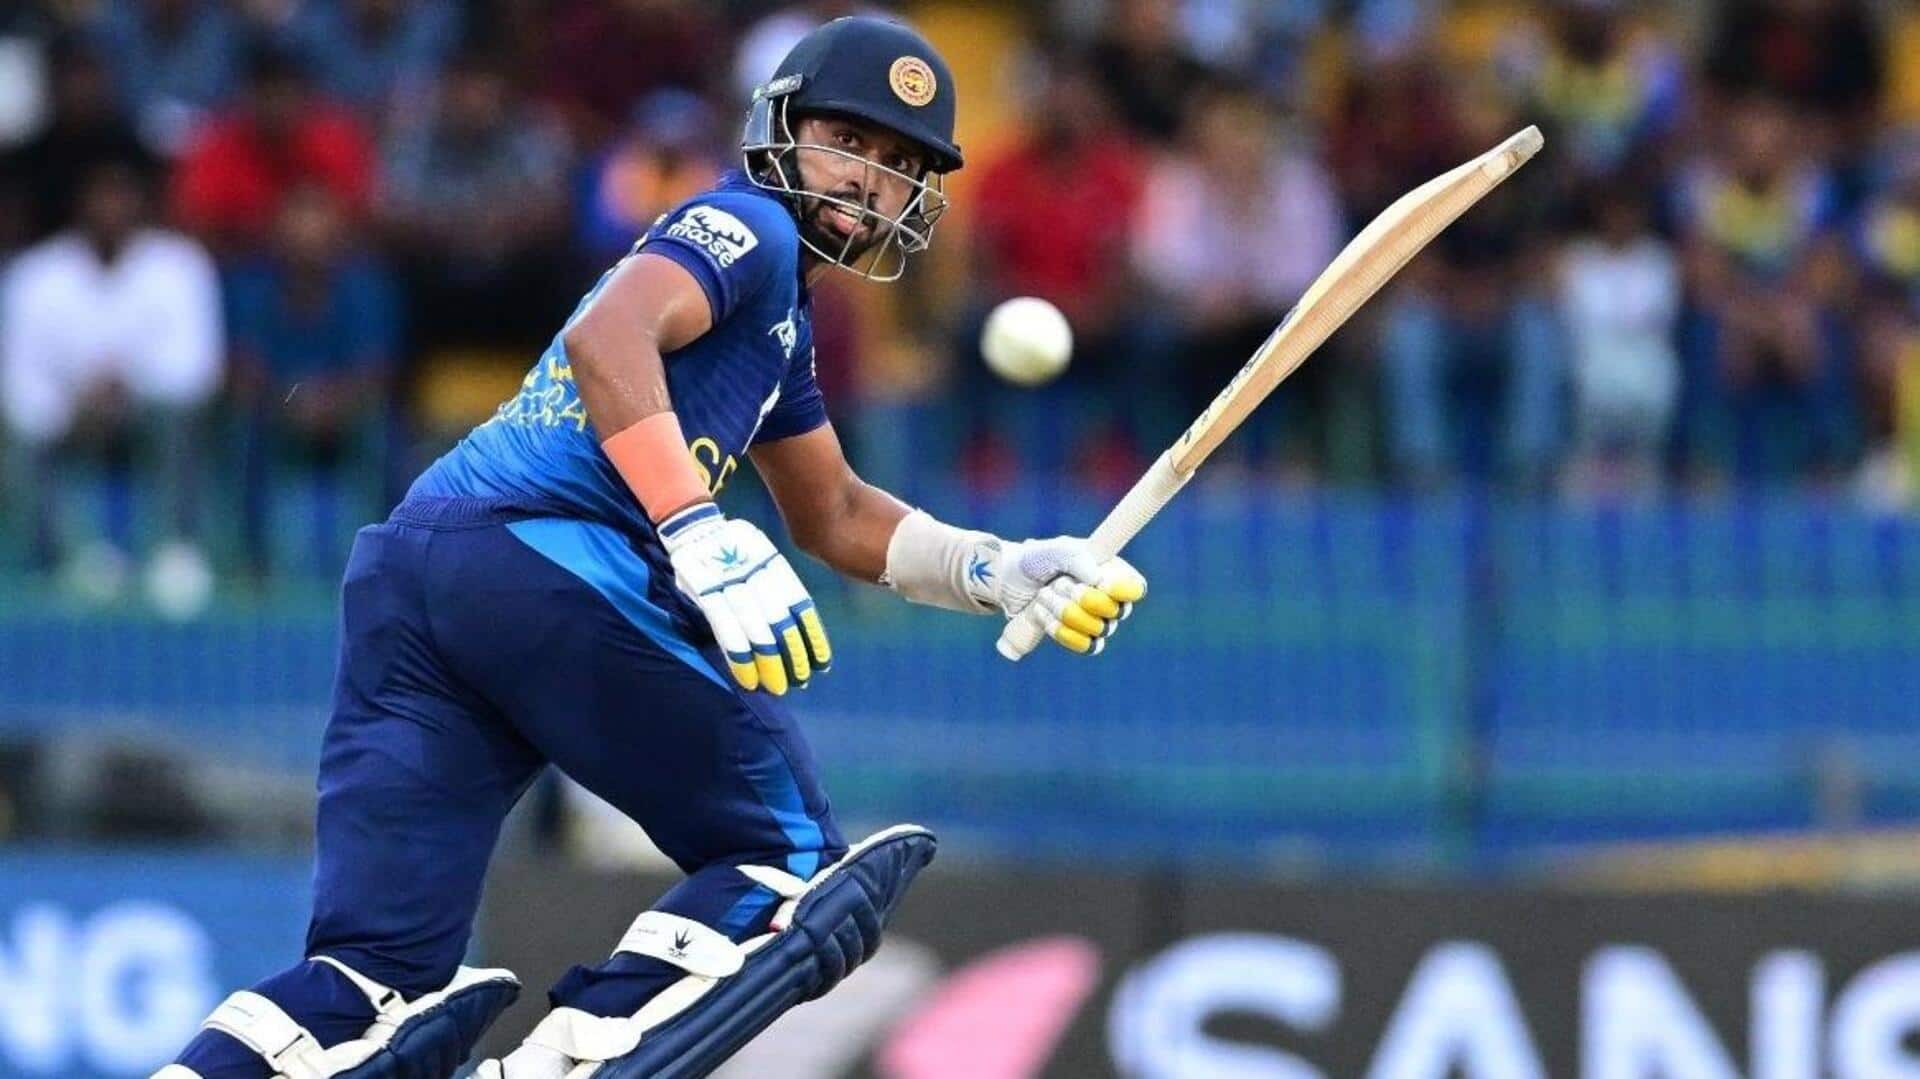 श्रीलंका बनाम अफगानिस्तान: सदीरा समरविक्रमा ने टी-20 अंतरराष्ट्रीय करियर का पहला अर्धशतक लगाया, जानिए उनके आंकड़े 